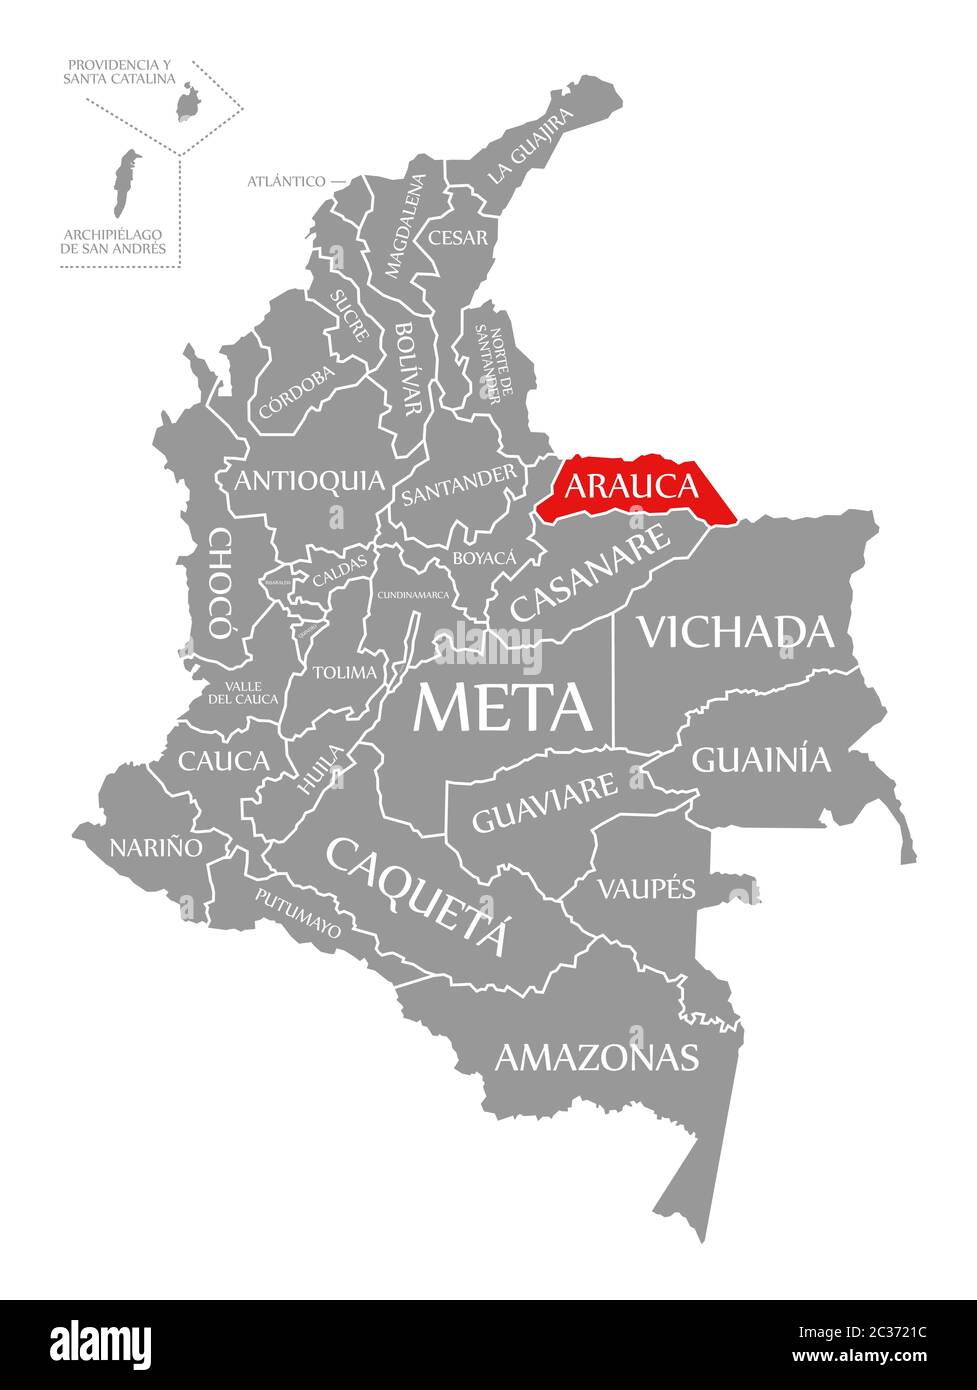 Arauca evidenziata in rosso nella mappa della Colombia Foto Stock